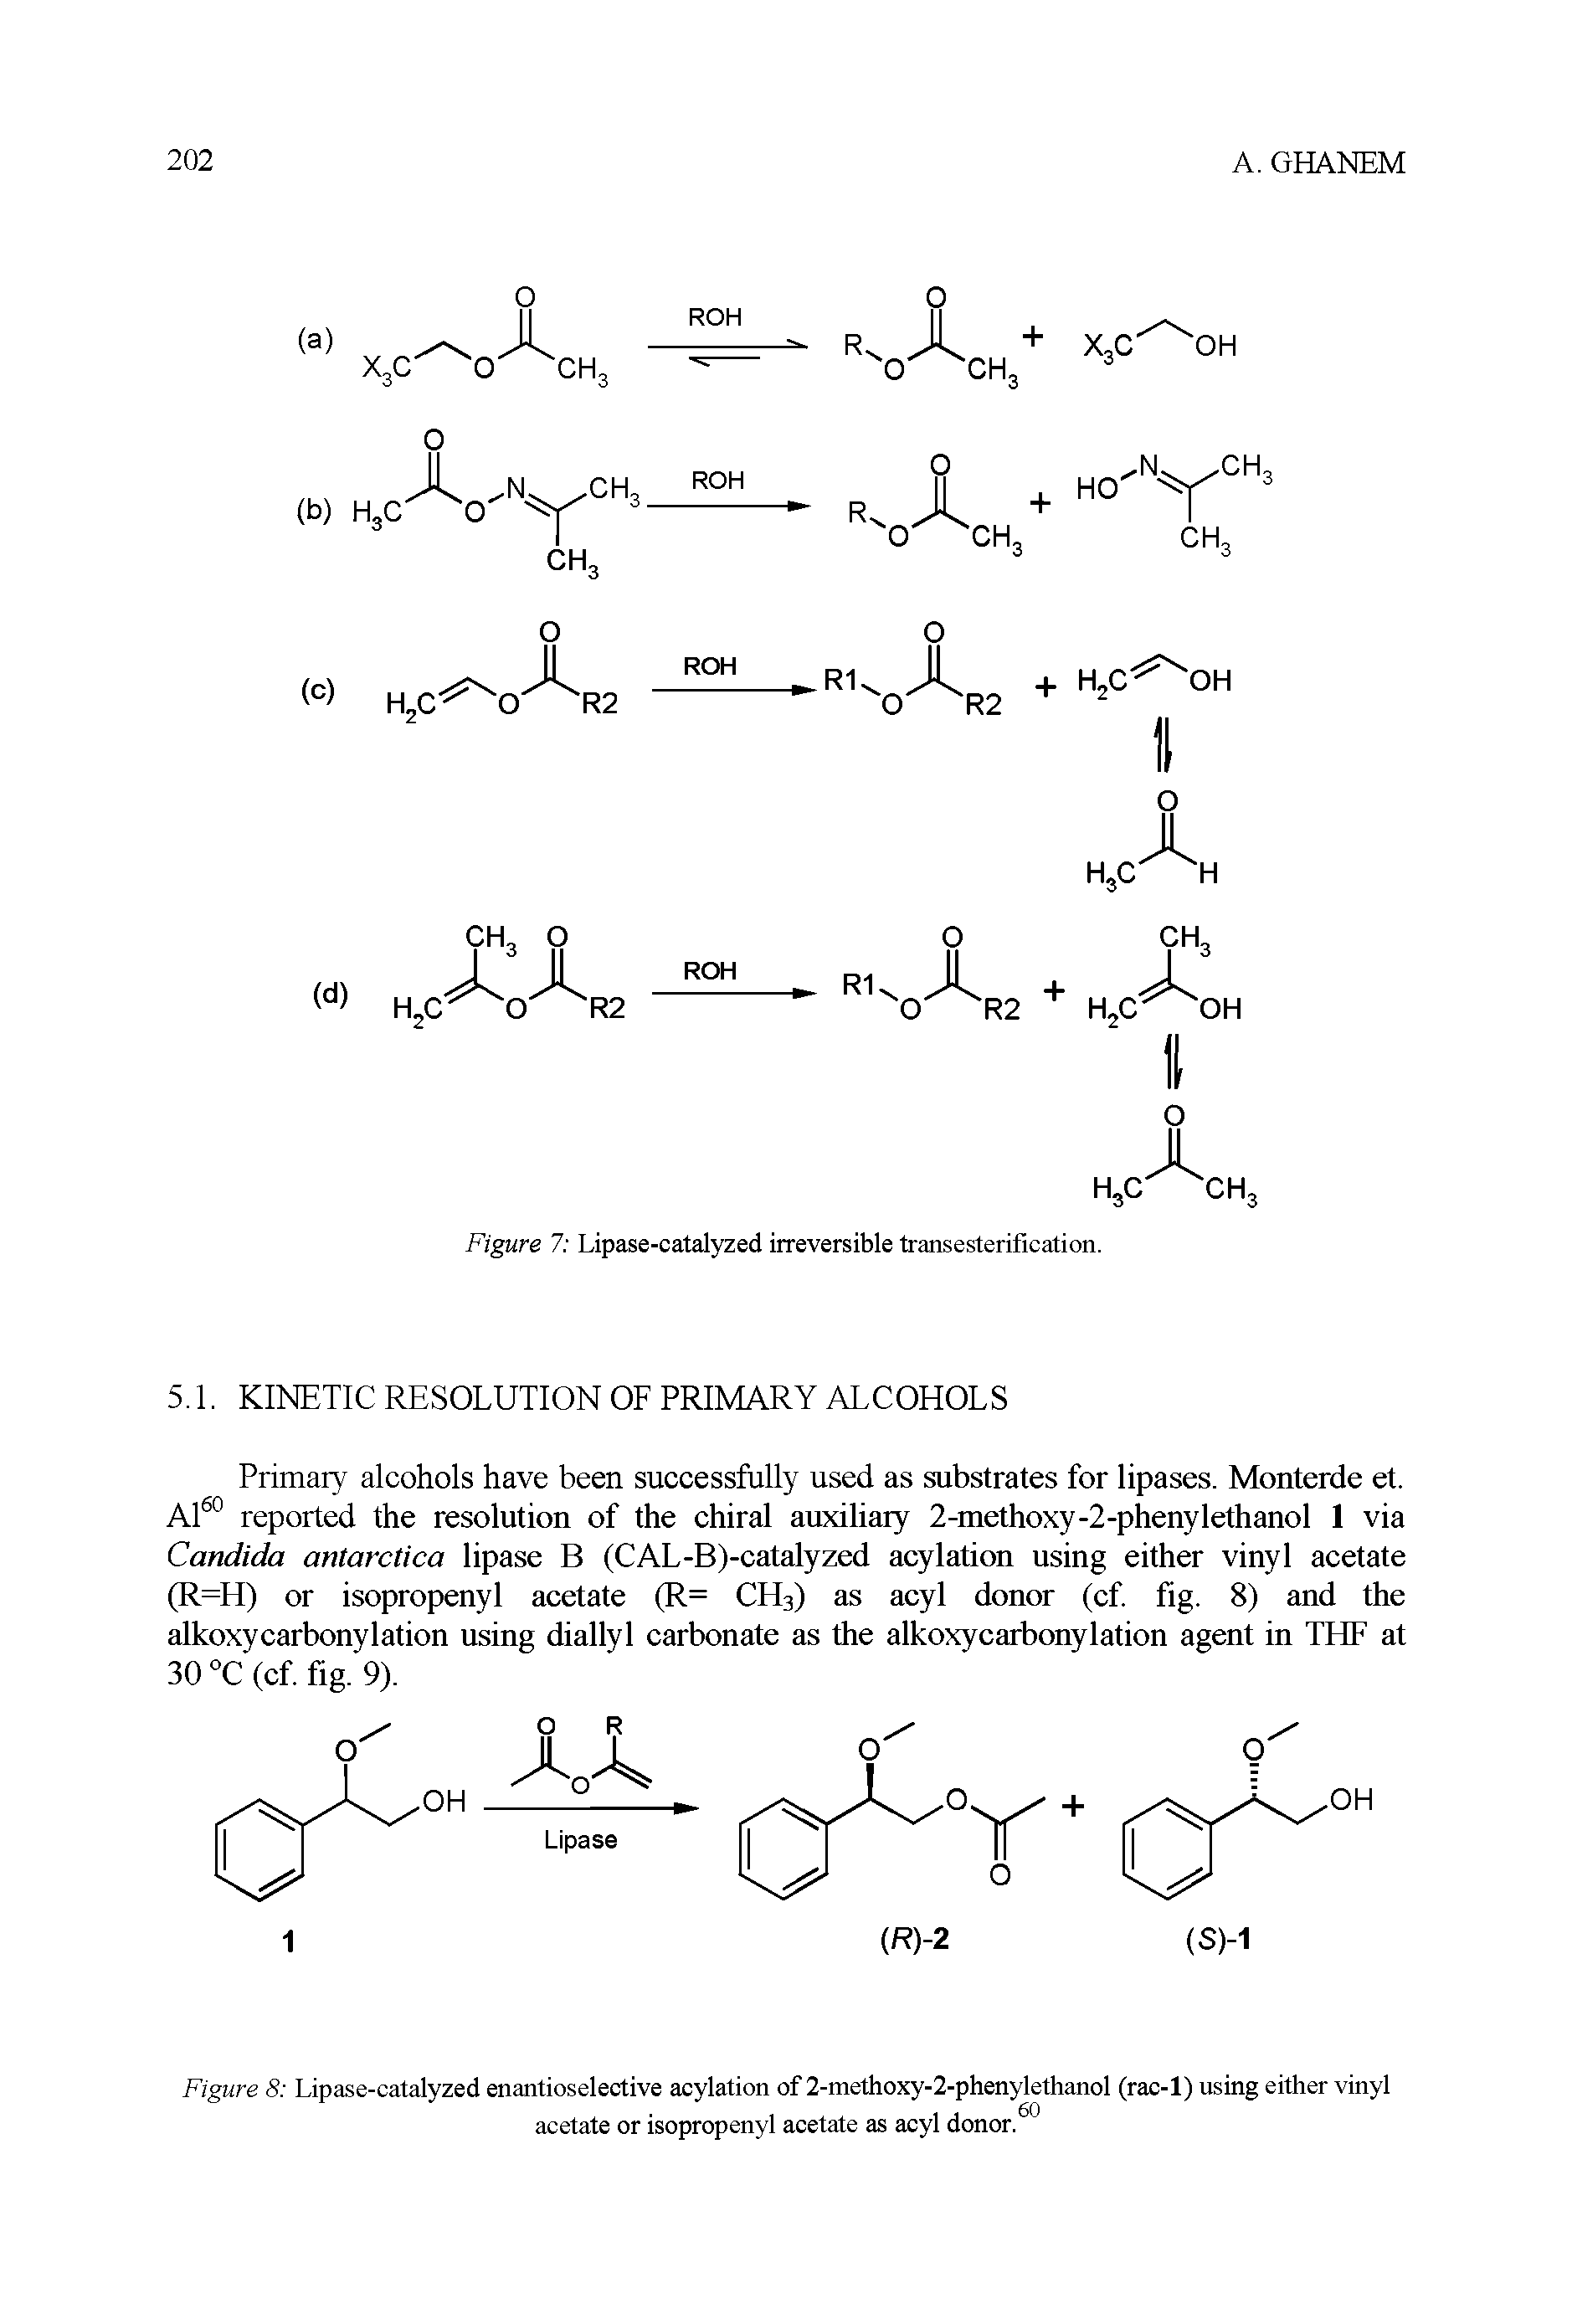 Figure 8 Lipase-catalyzed enantioselective acylation of 2-methoxy-2-phenylethanol (rac-1) using either vinyl acetate or isopropenyl acetate as acyl donor.